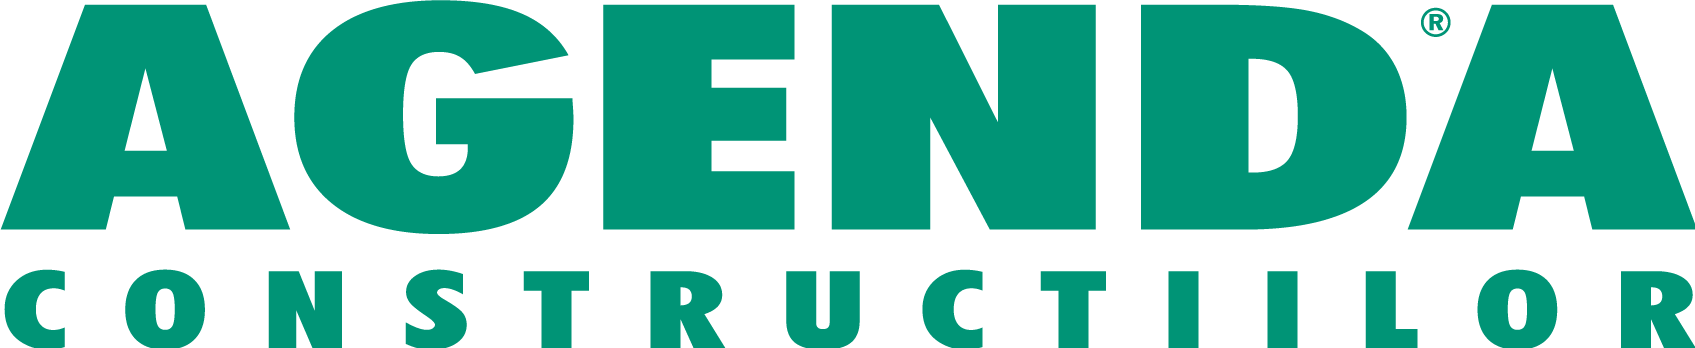 eDevize - Agenda constructiilor logo